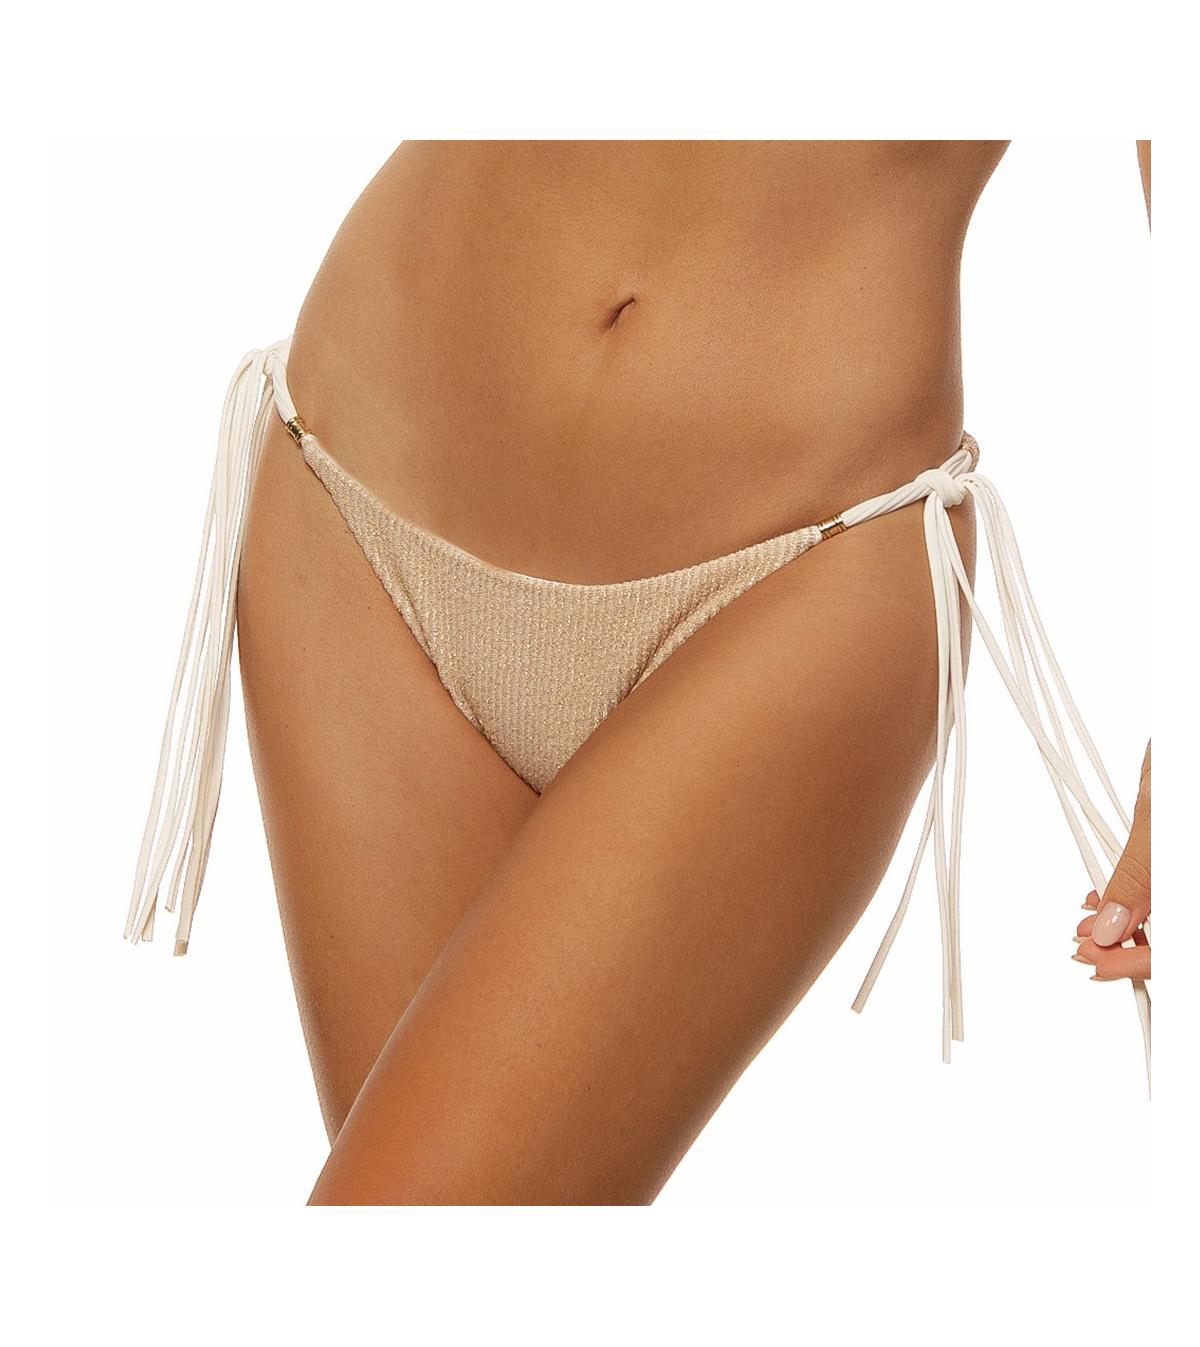 Women's Crinkle Lurex Reversible Scrunch Tie Side Bikini Bottom - Off-white